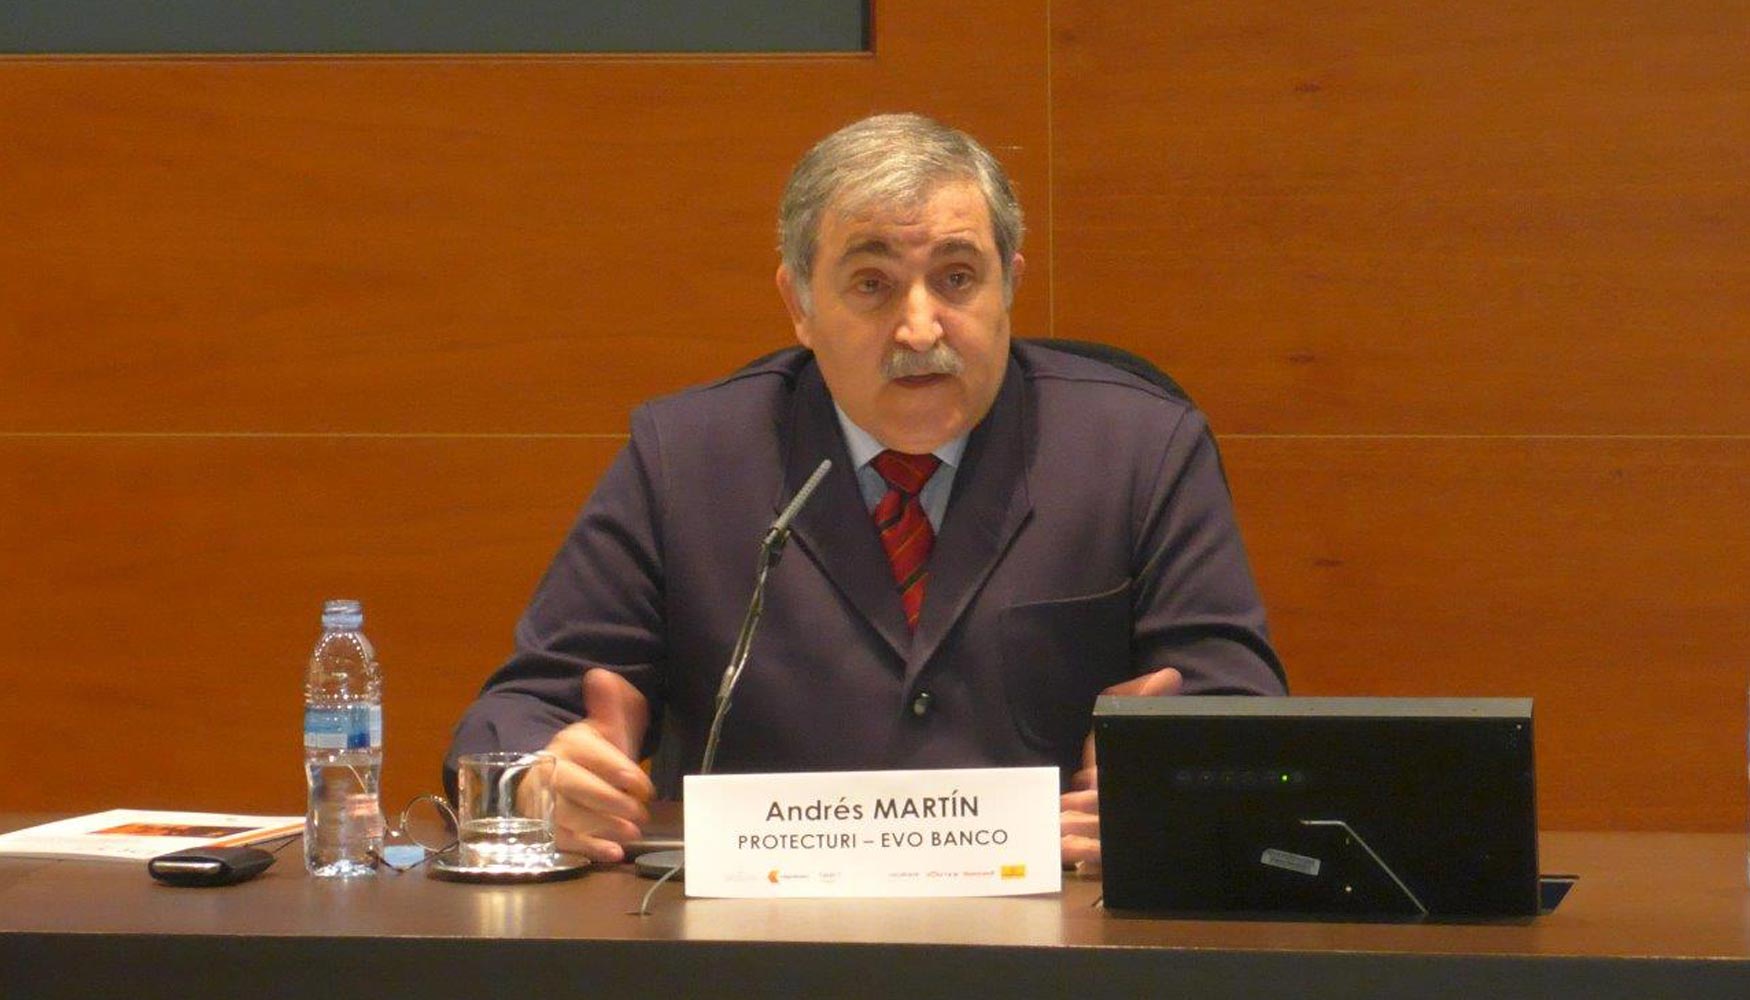 Andrs Martn Ludea, vicepresidente de Protecturi, director de seguridad de Evo Banco y socio experto de Aecra